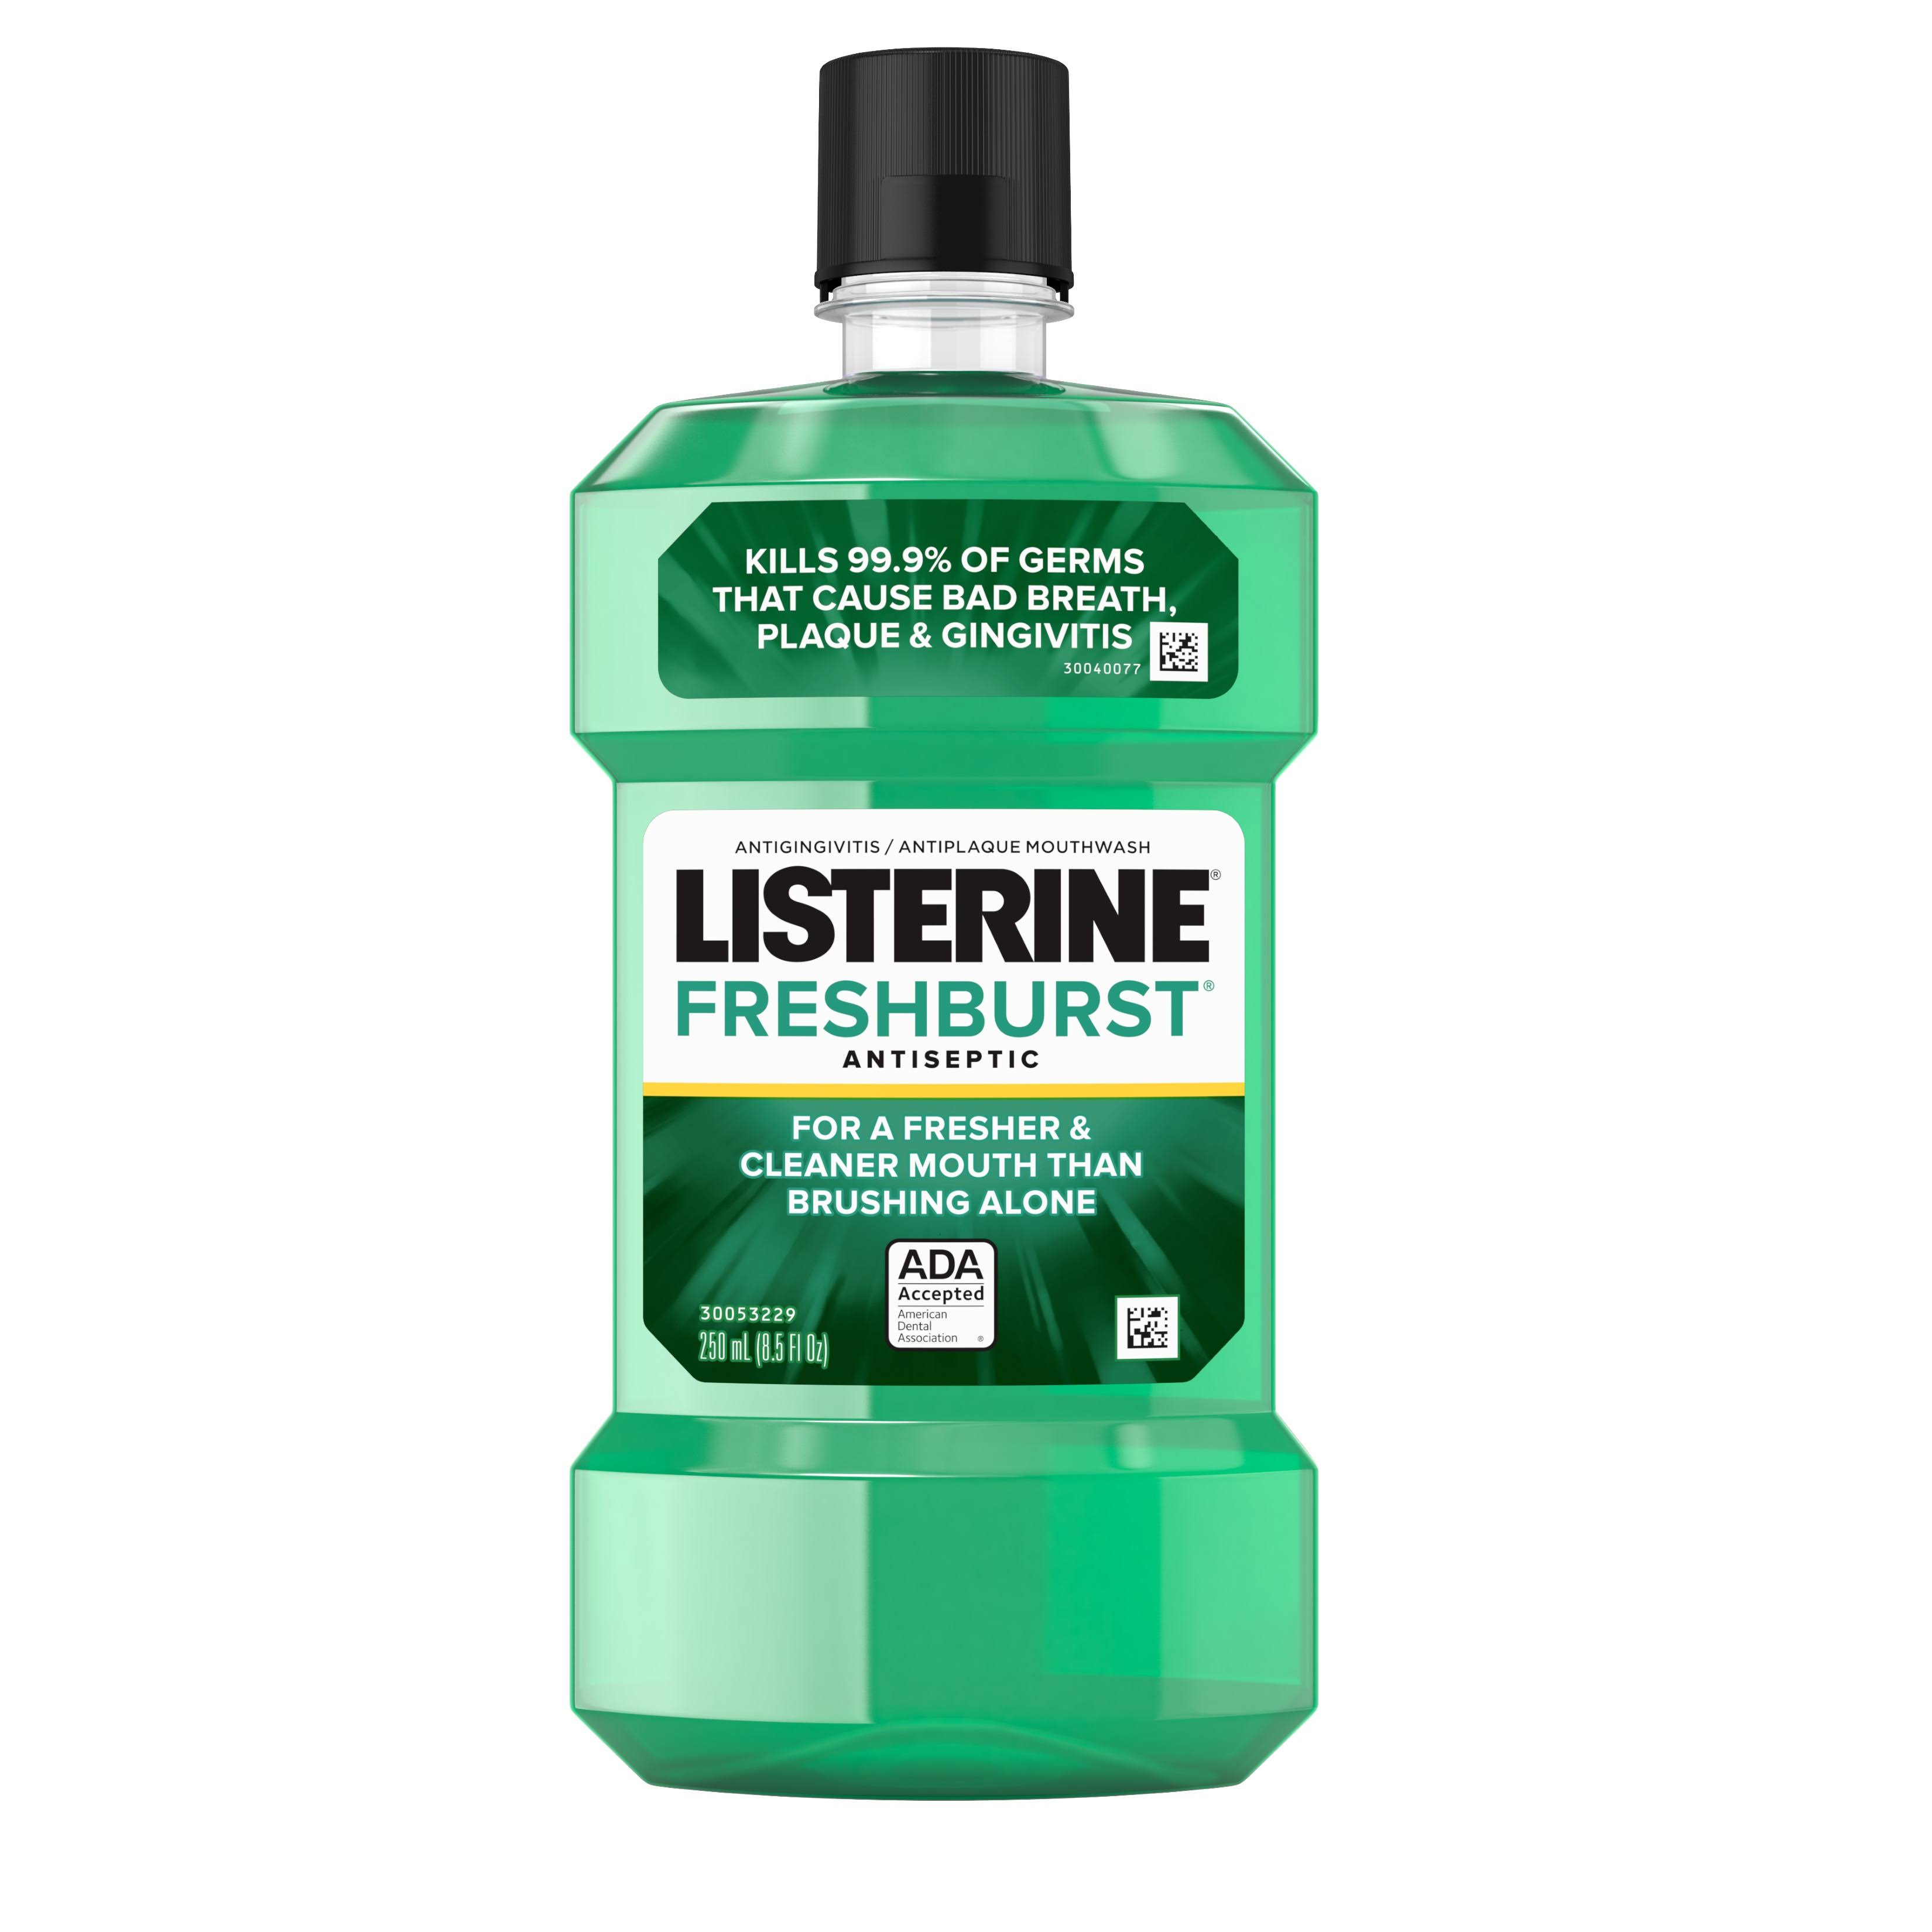 Listerine Antiseptic Mouthwash - Freshburst, 8.5oz